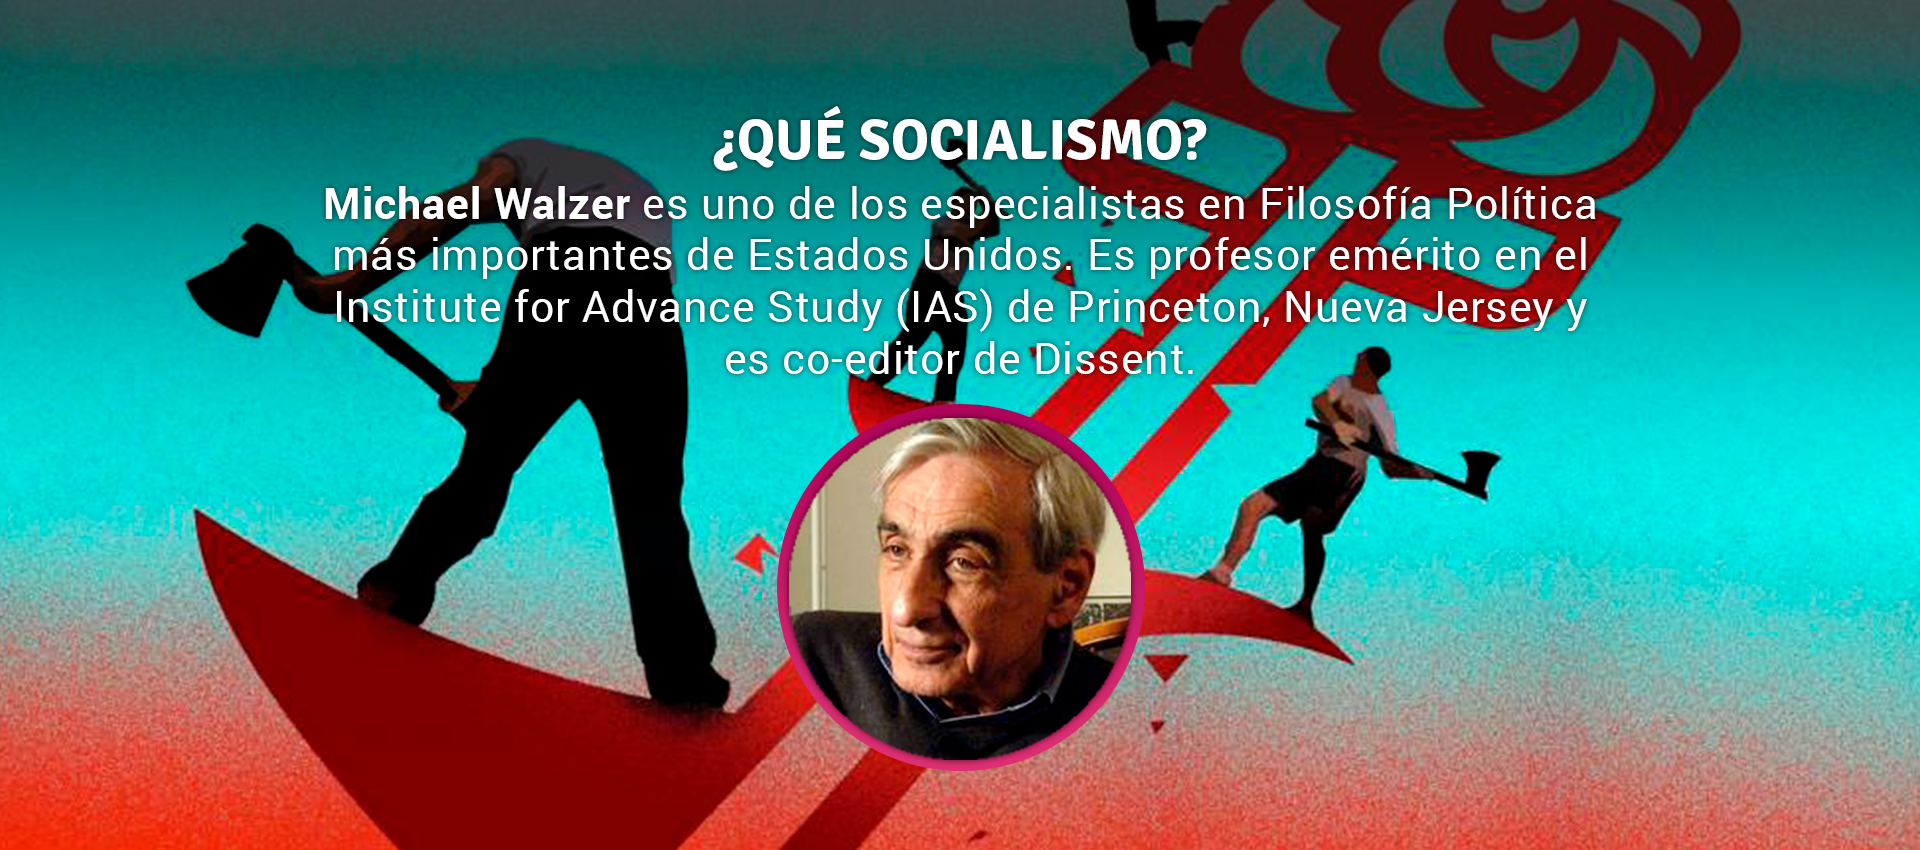 Michael Walzer - ¿QUÉ SOCIALISMO?